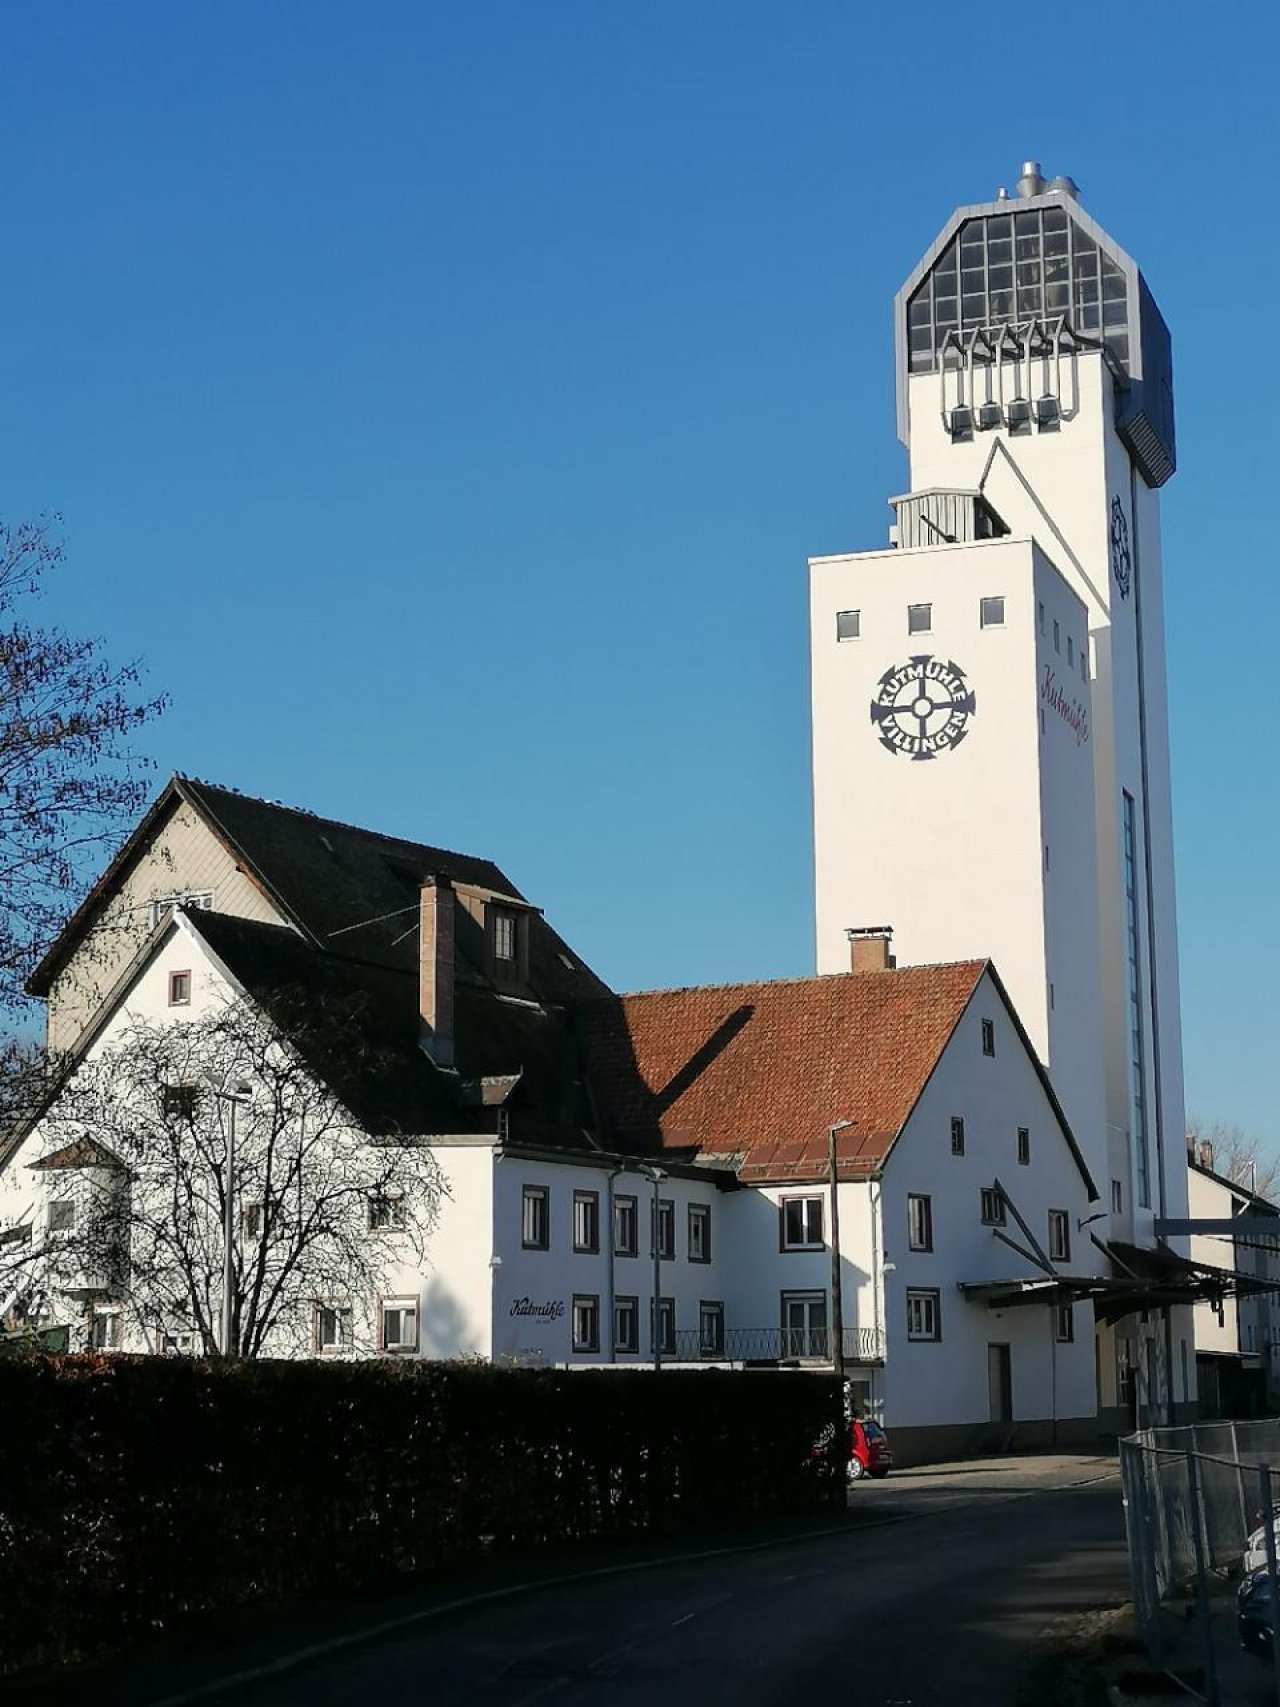 Mühle in Landauf, LandApp BW App spotted by Harry Schneckenburger on 18.12.2020